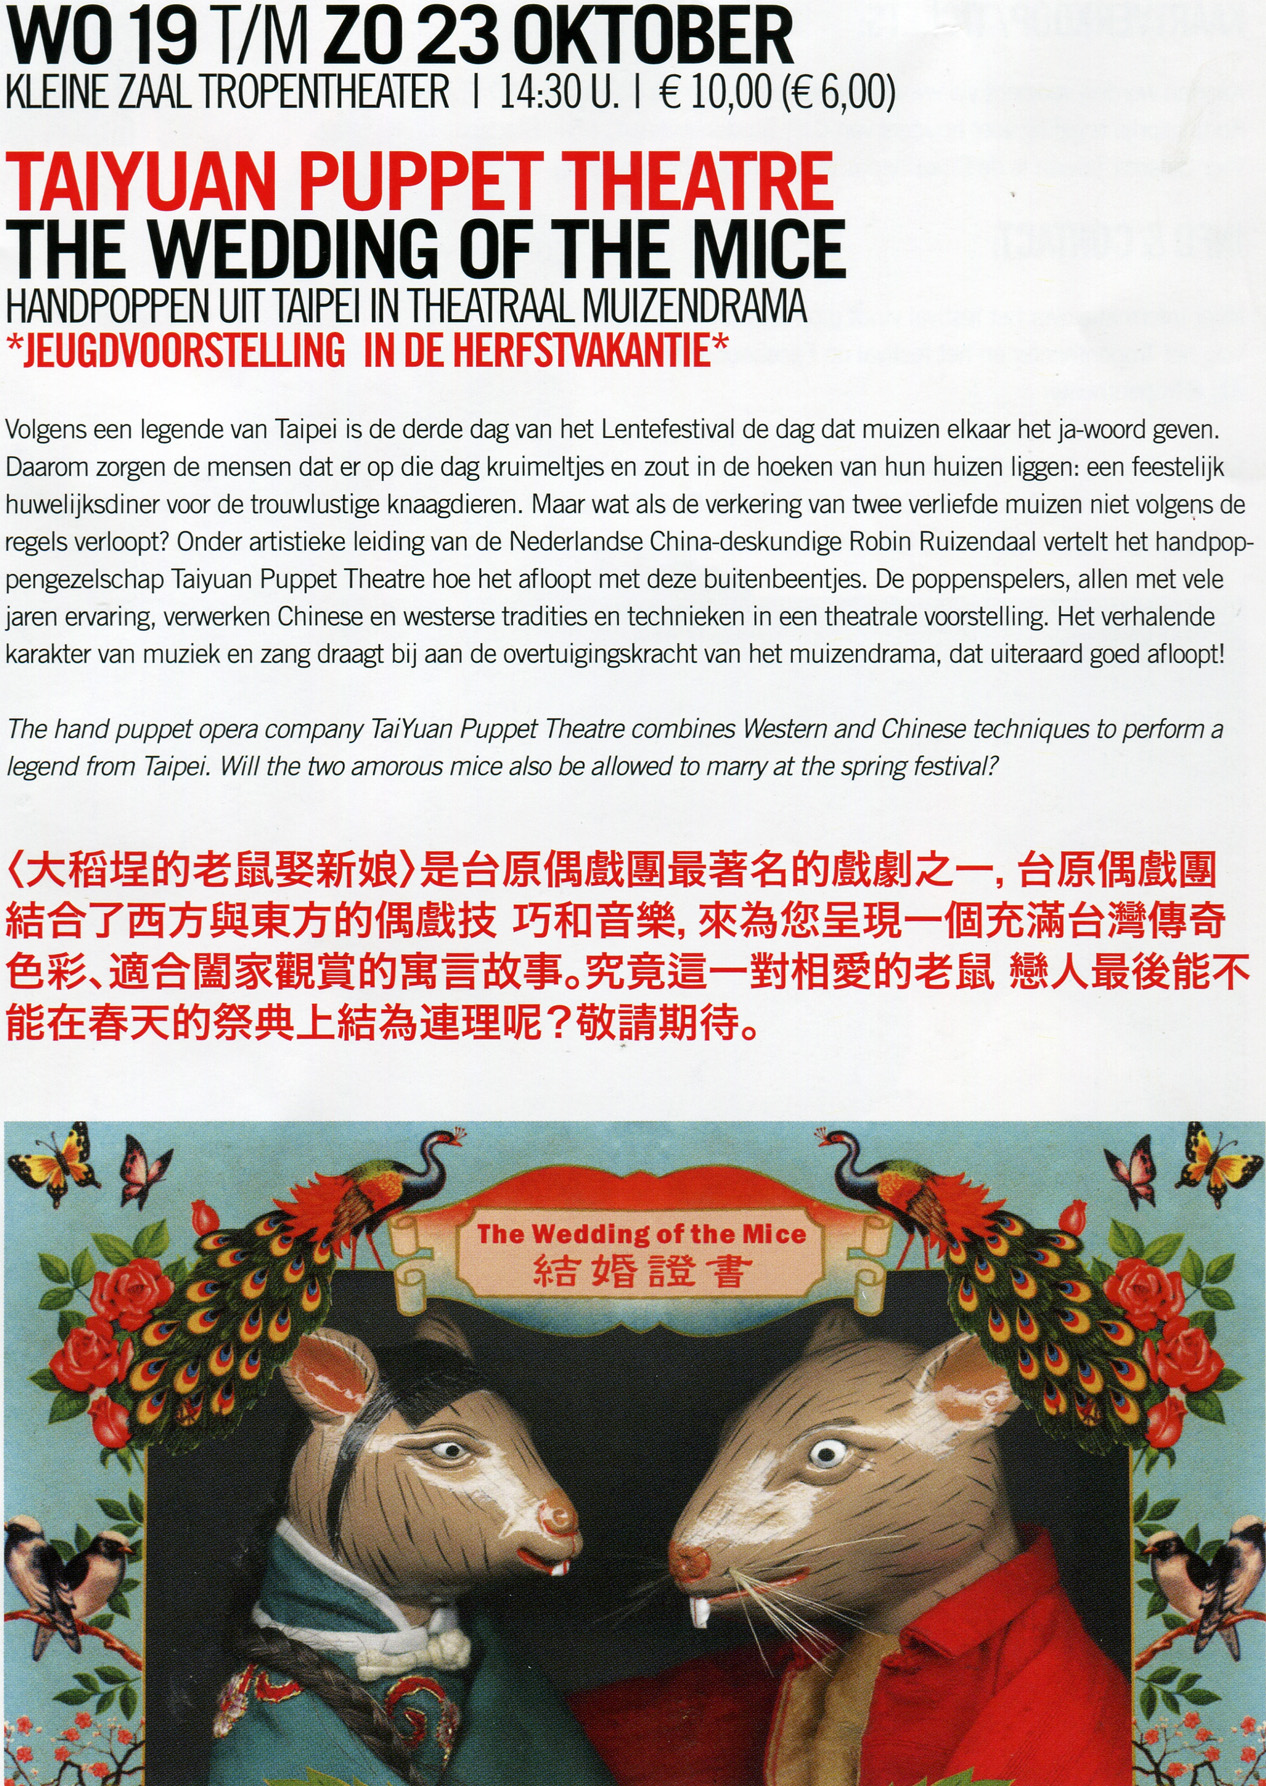 羅斌還把台灣的民間故事廖添丁改編成新古典布袋戲「廖添丁殺人案」，以及兒童故事「大稻埕老鼠娶親」。